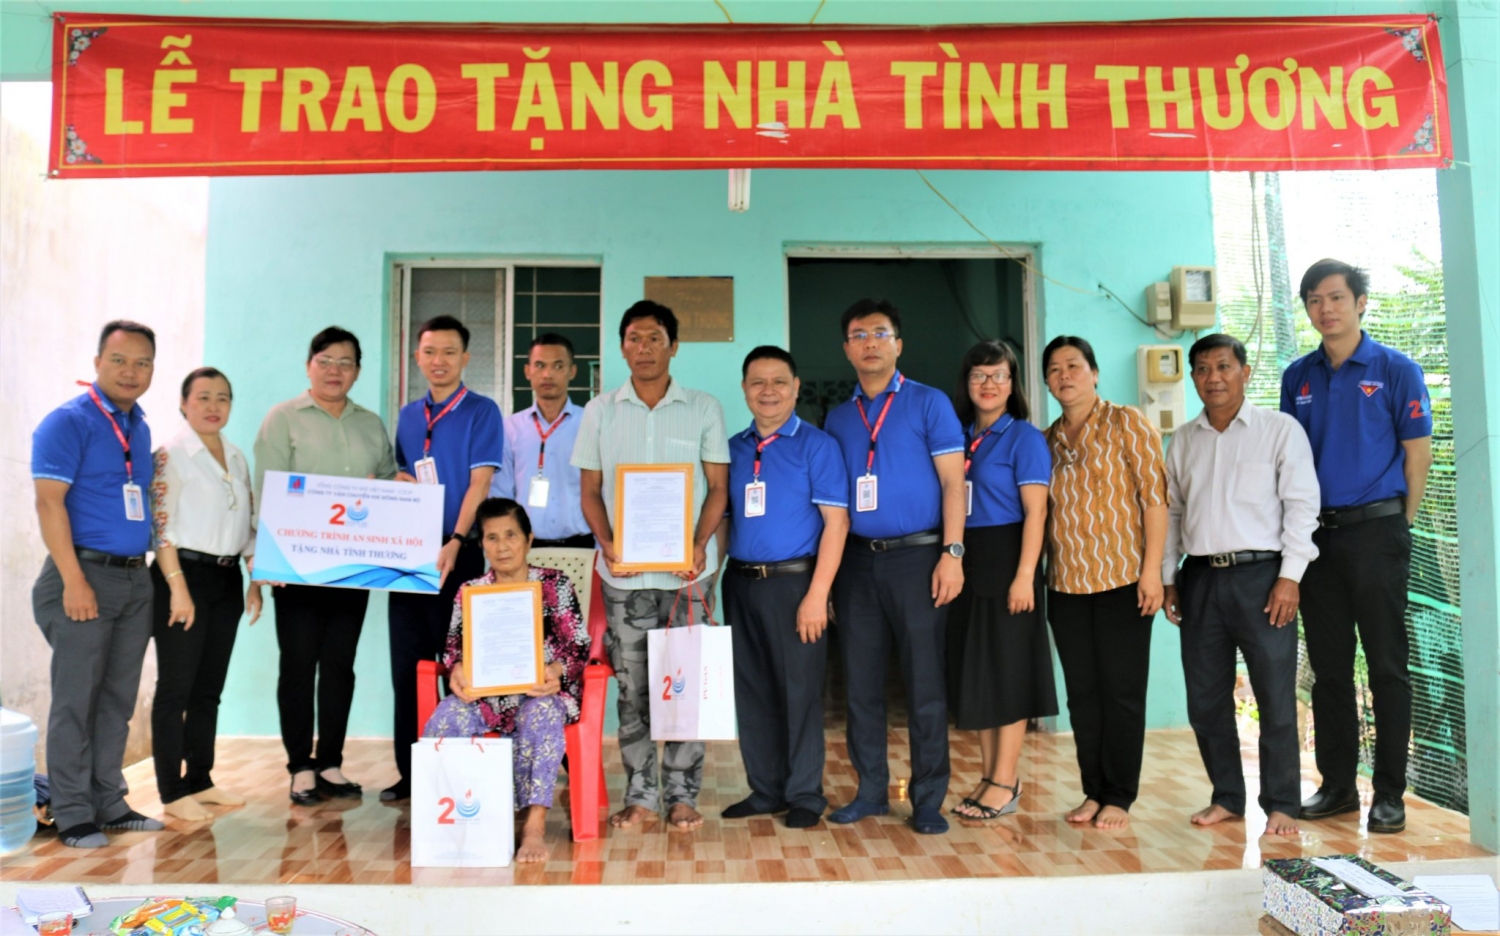 KĐN phối hợp trao tặng 2 căn nhà tình thương tại huyện Cần Giờ, Tp.HCM